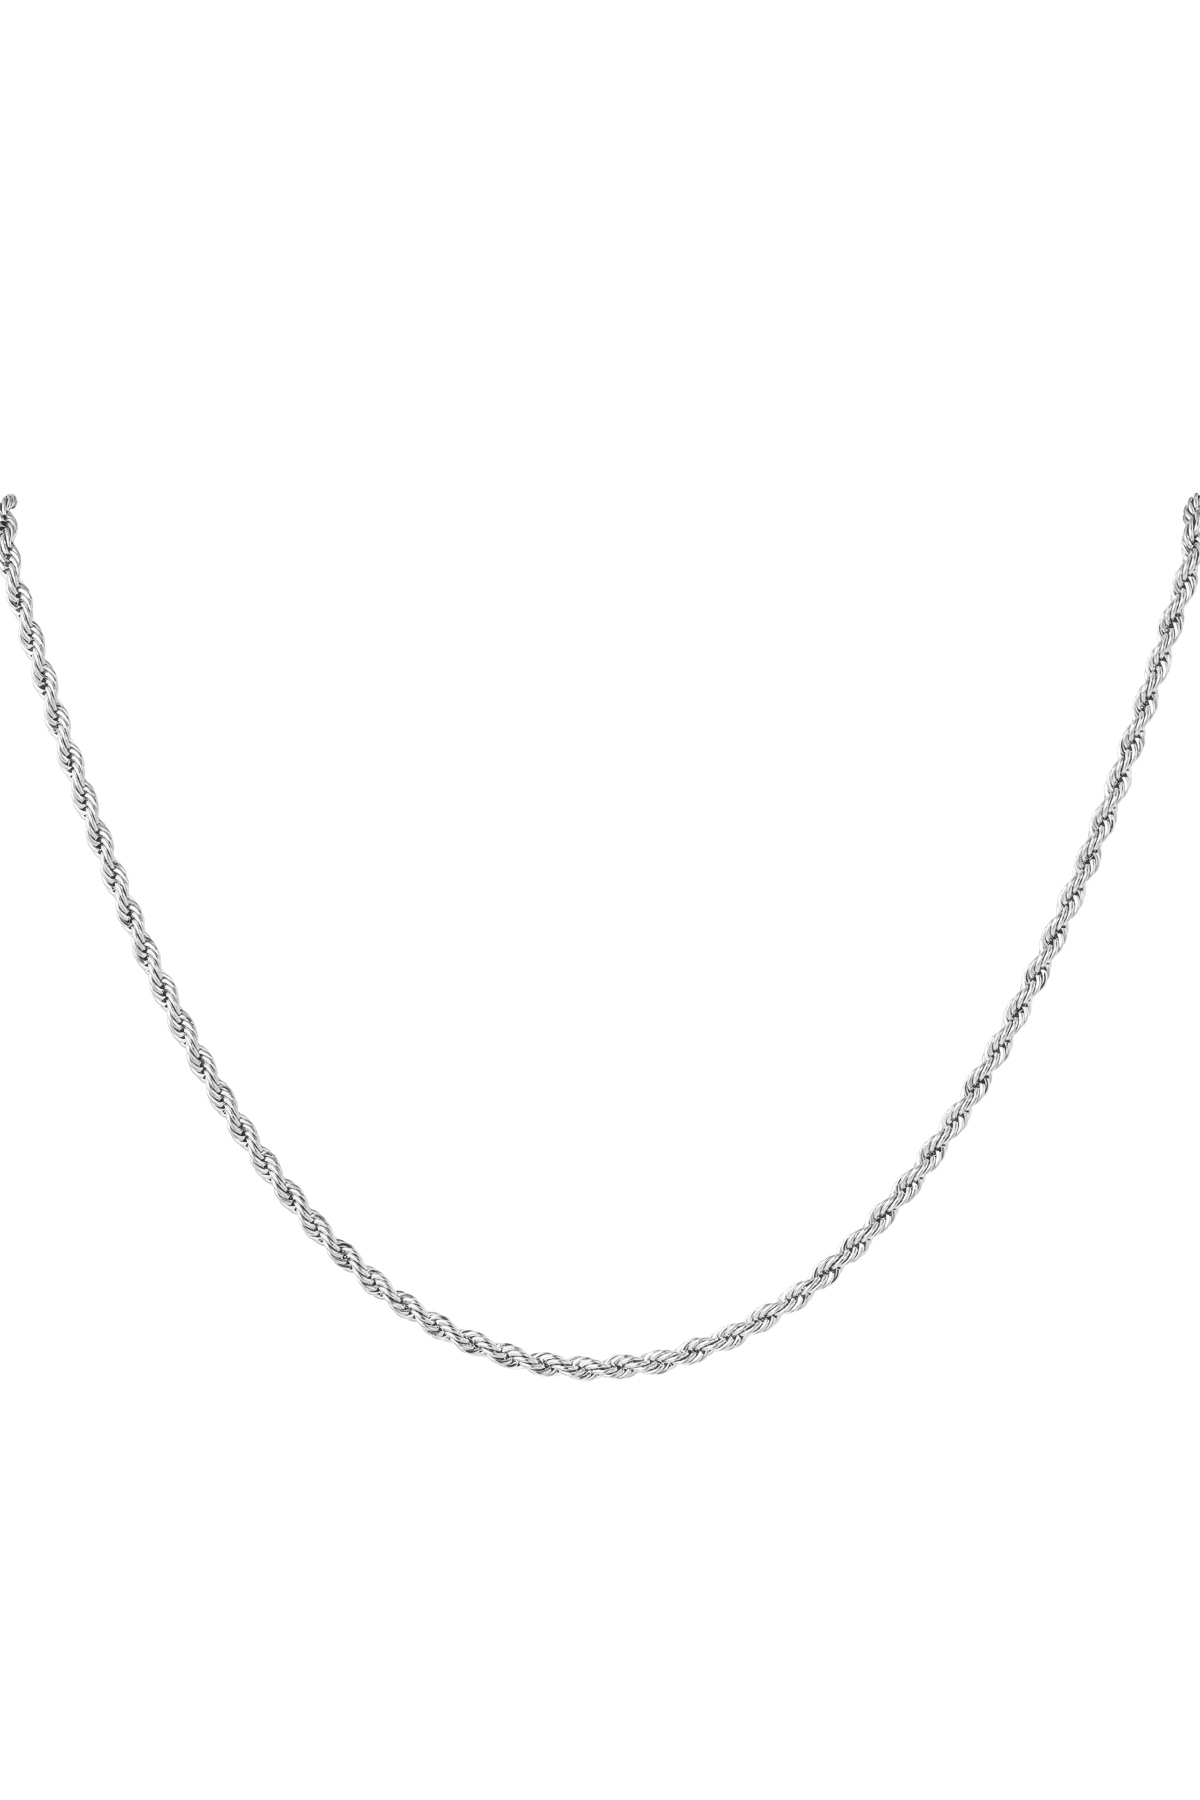 Collana intrecciata unisex in acciaio inossidabile 60 cm - Argento-3,0 mm h5 